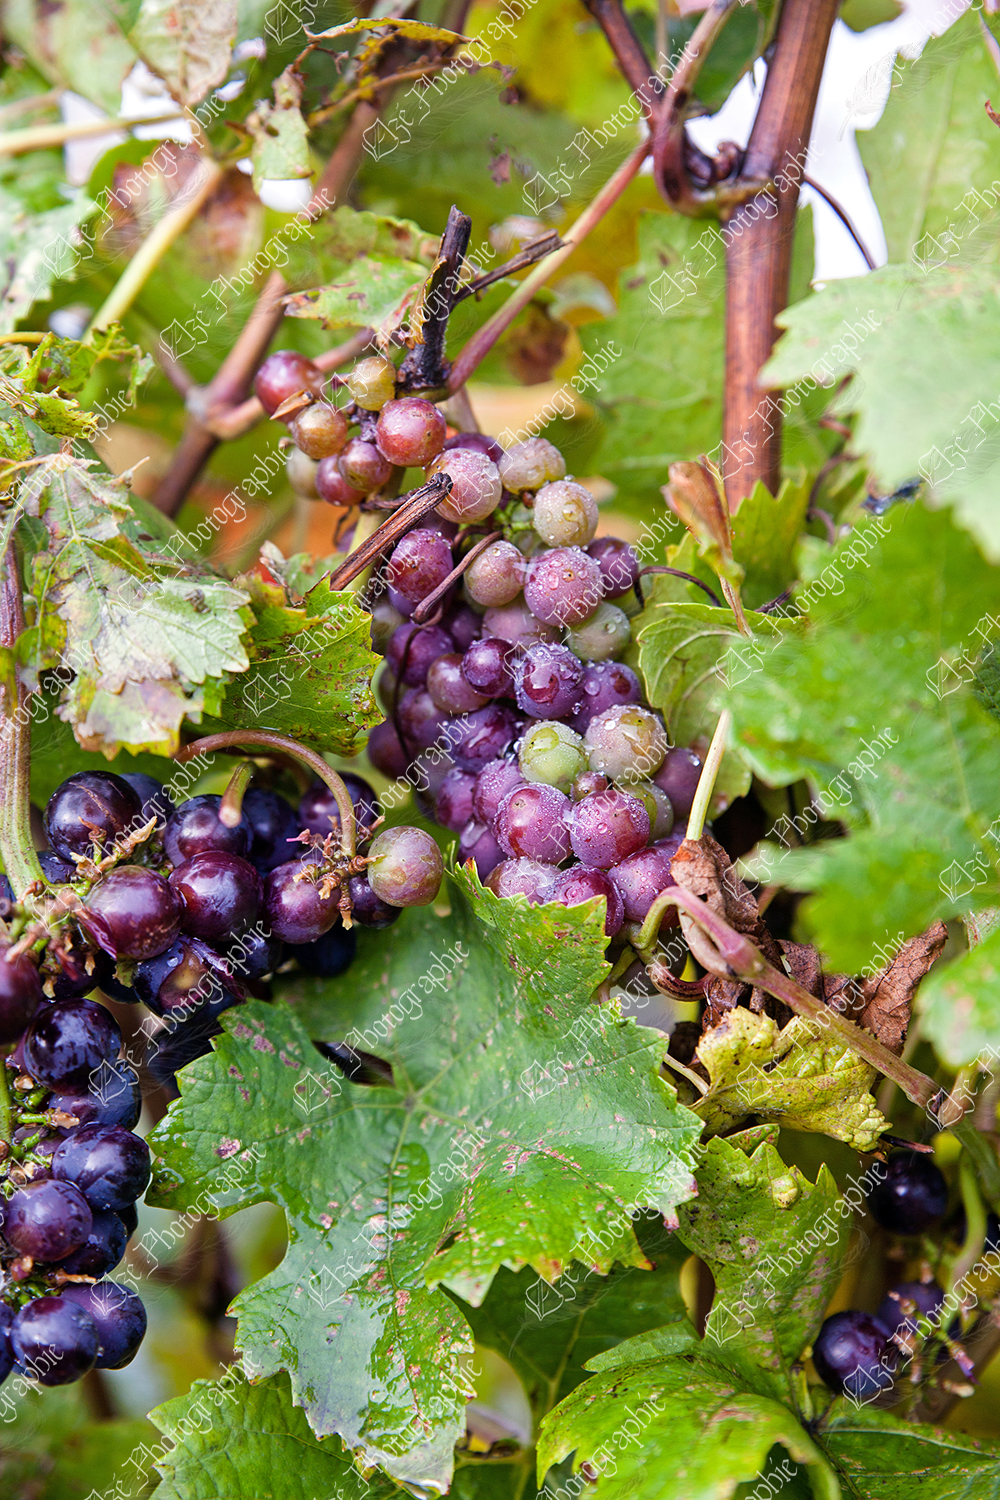 elze_photo_3306_grappes_raisins_vigne_vine_plant_grape